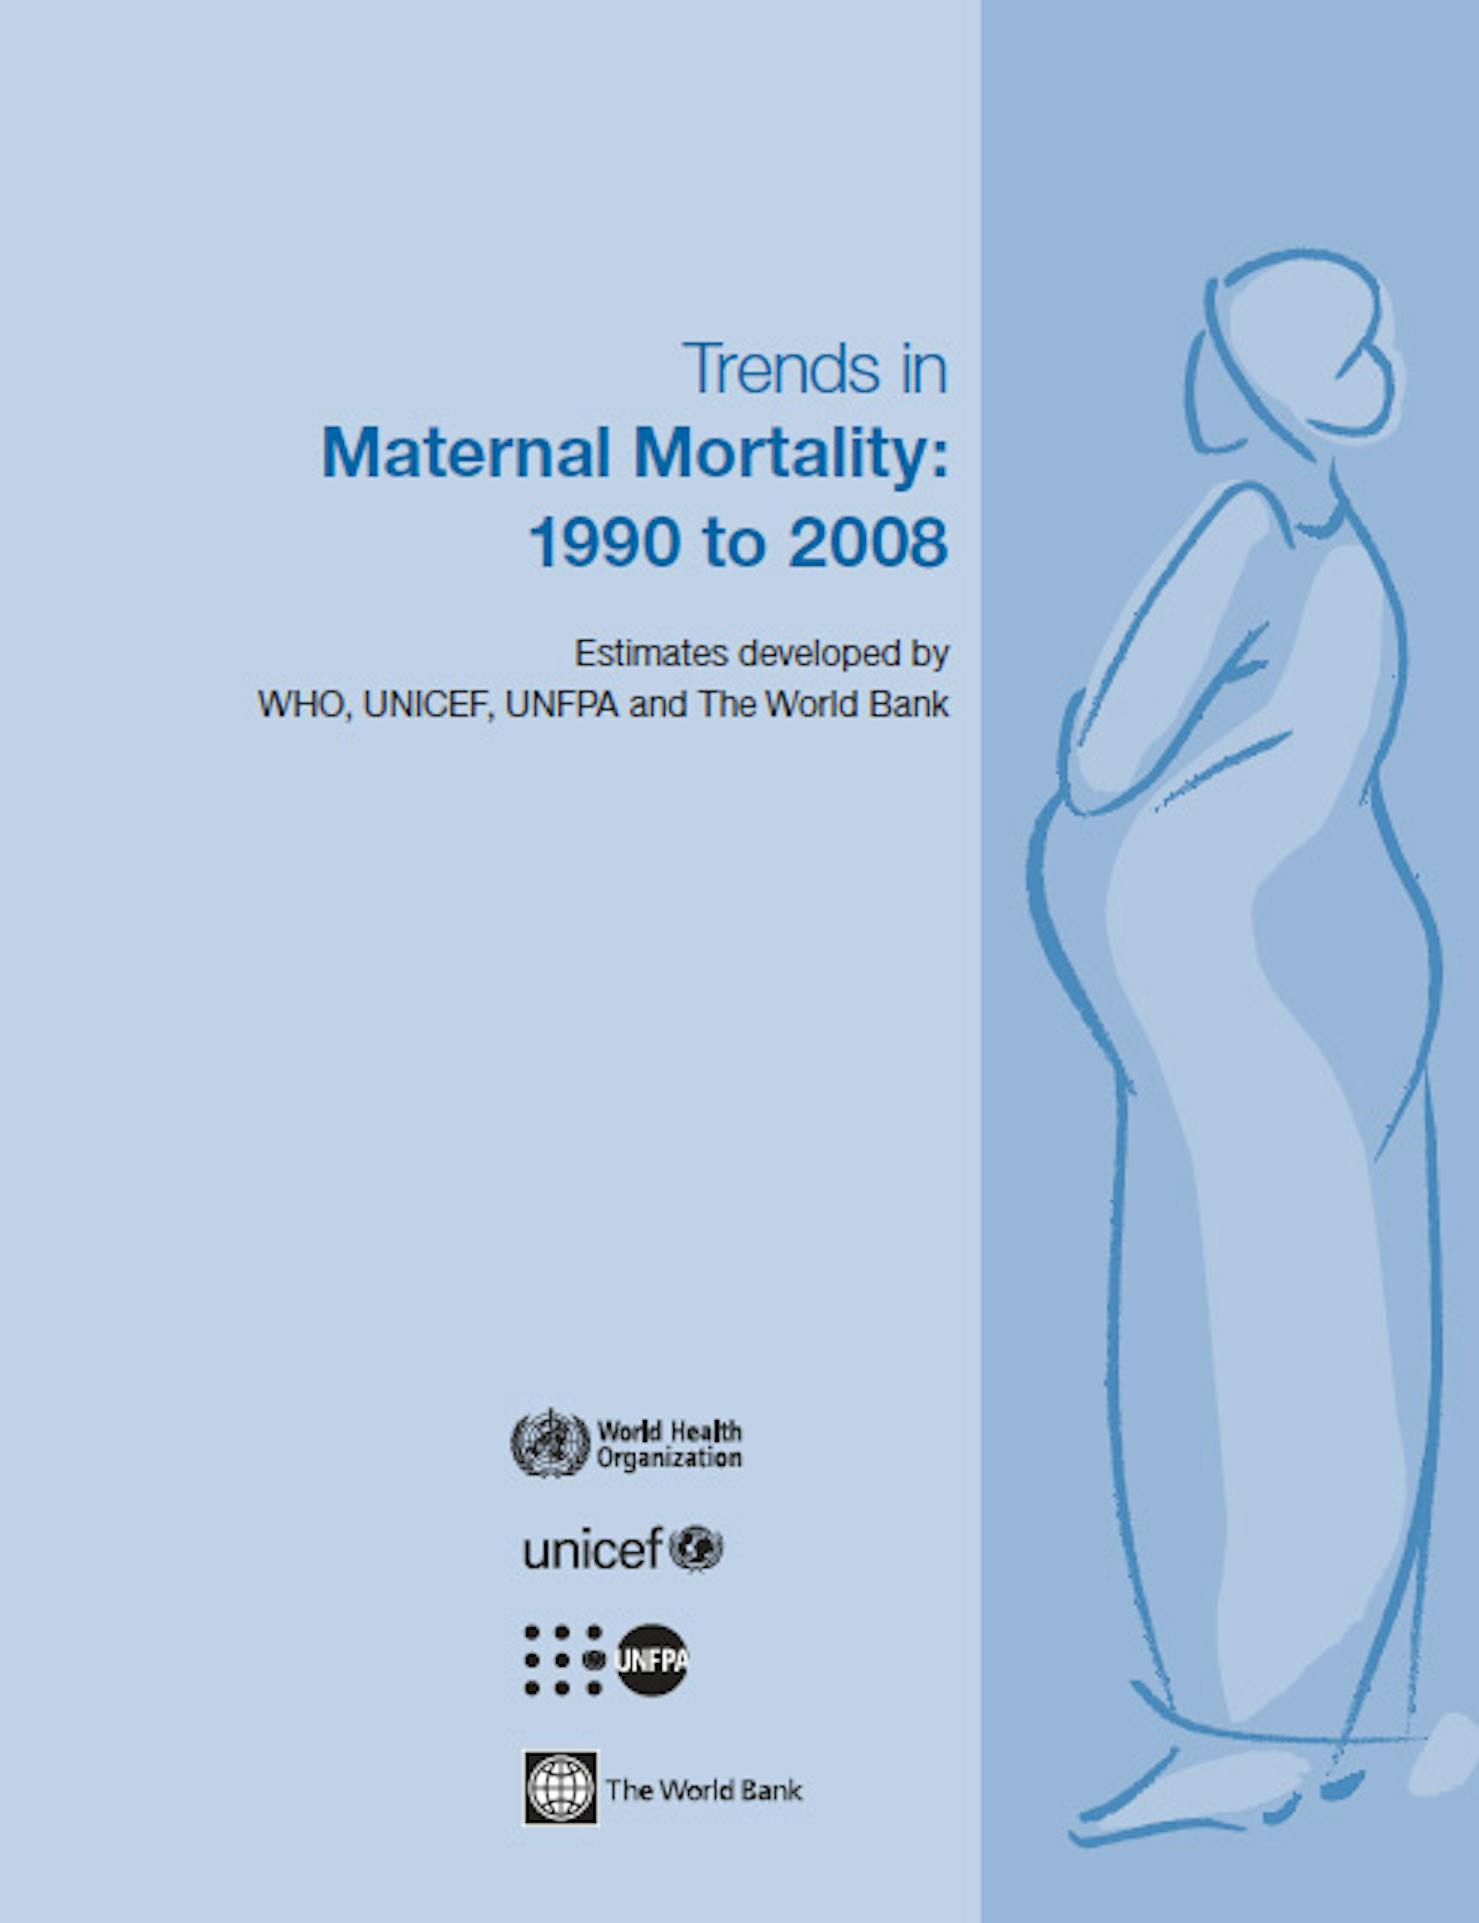 Andamenti nella mortalità materna: dal 1990 al 2008